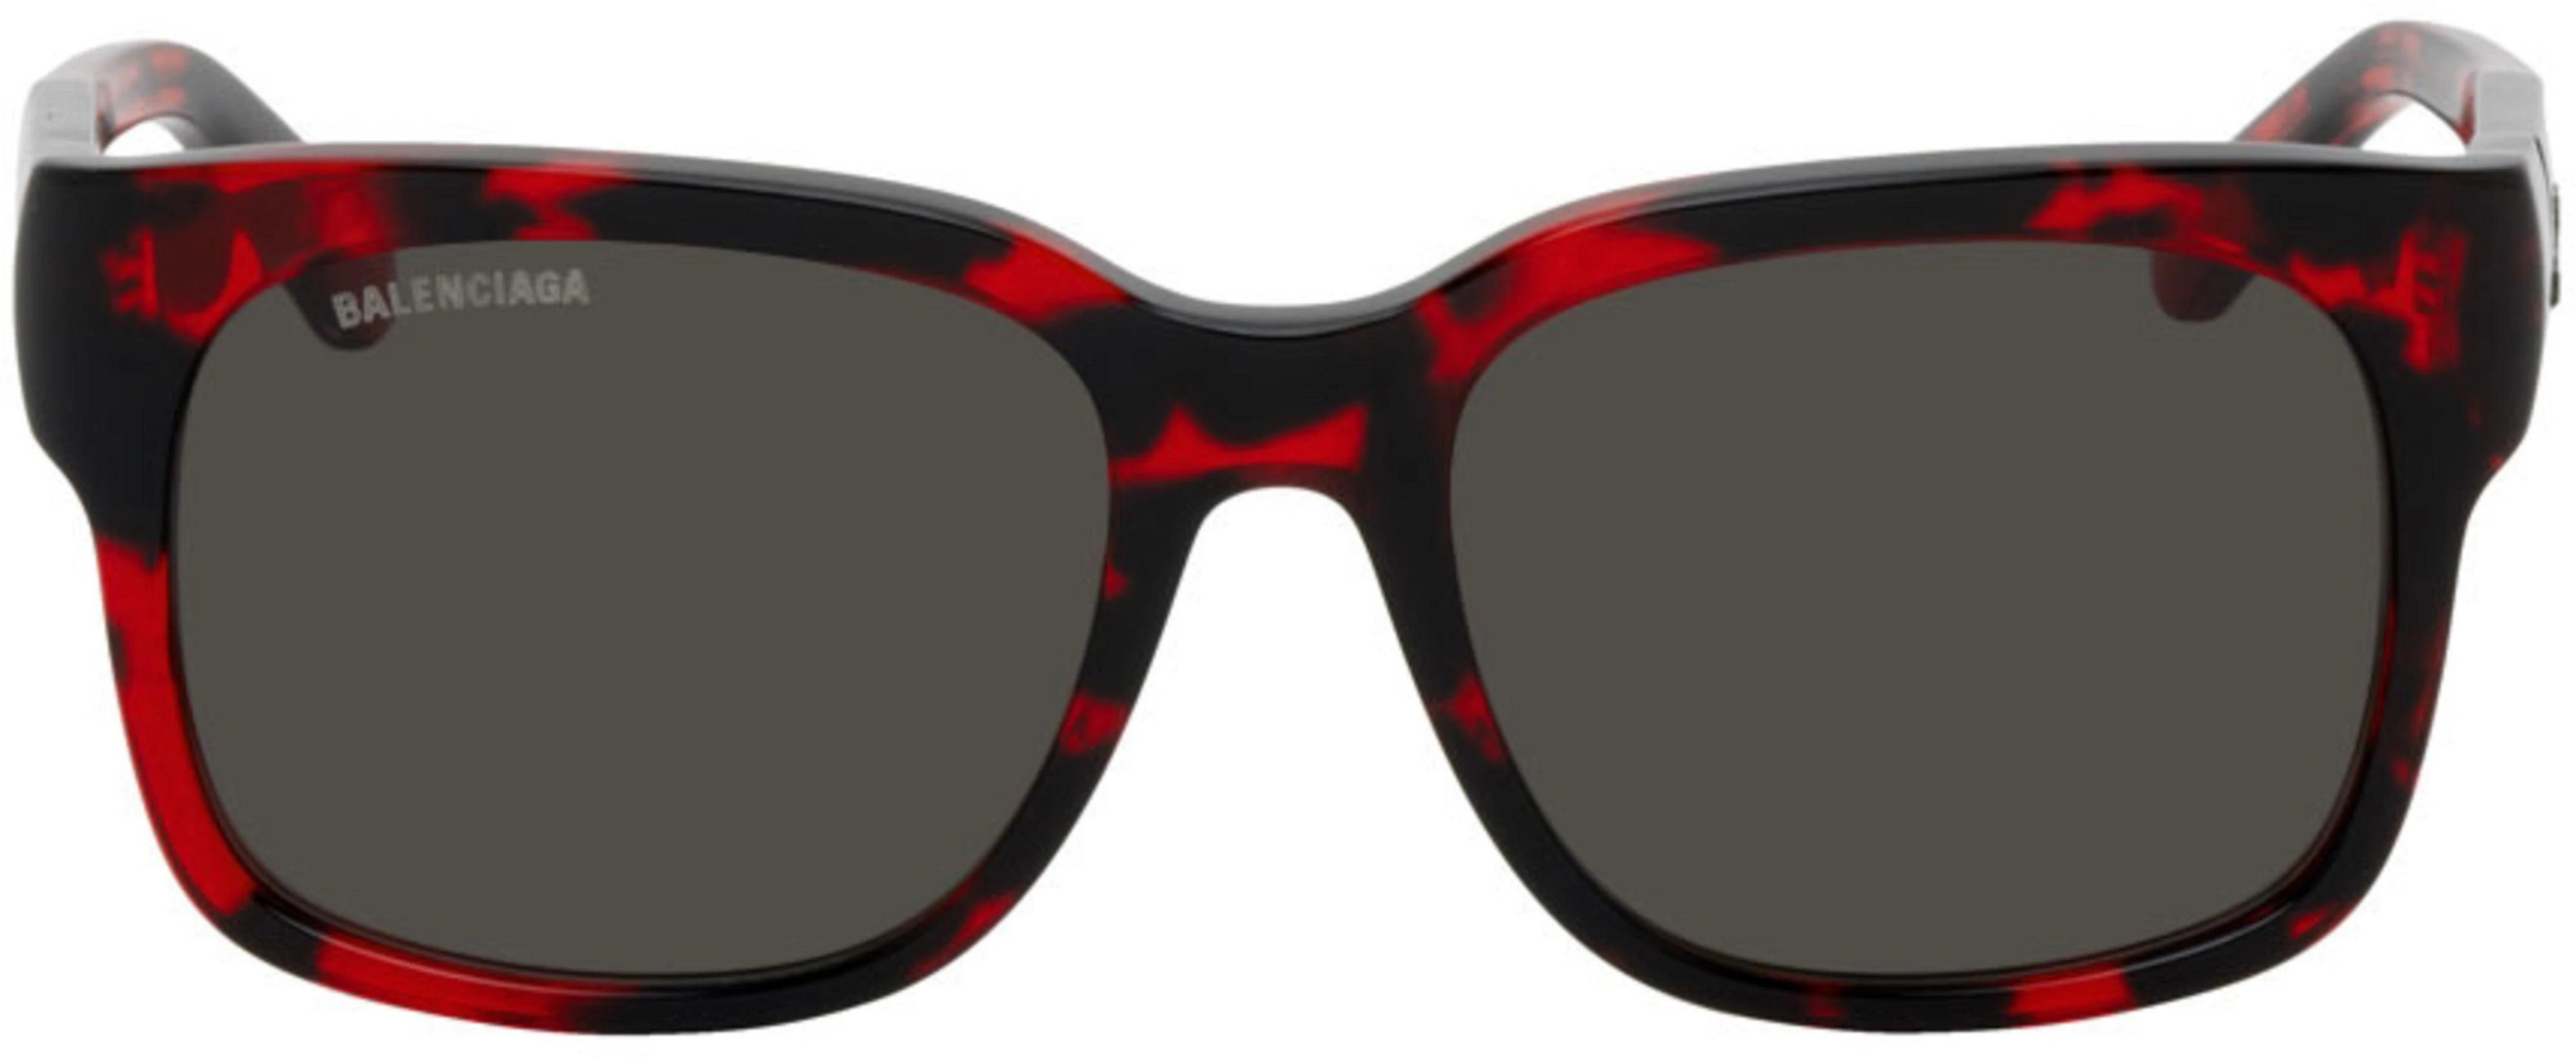 Black & Red Square Sunglasses by BALENCIAGA